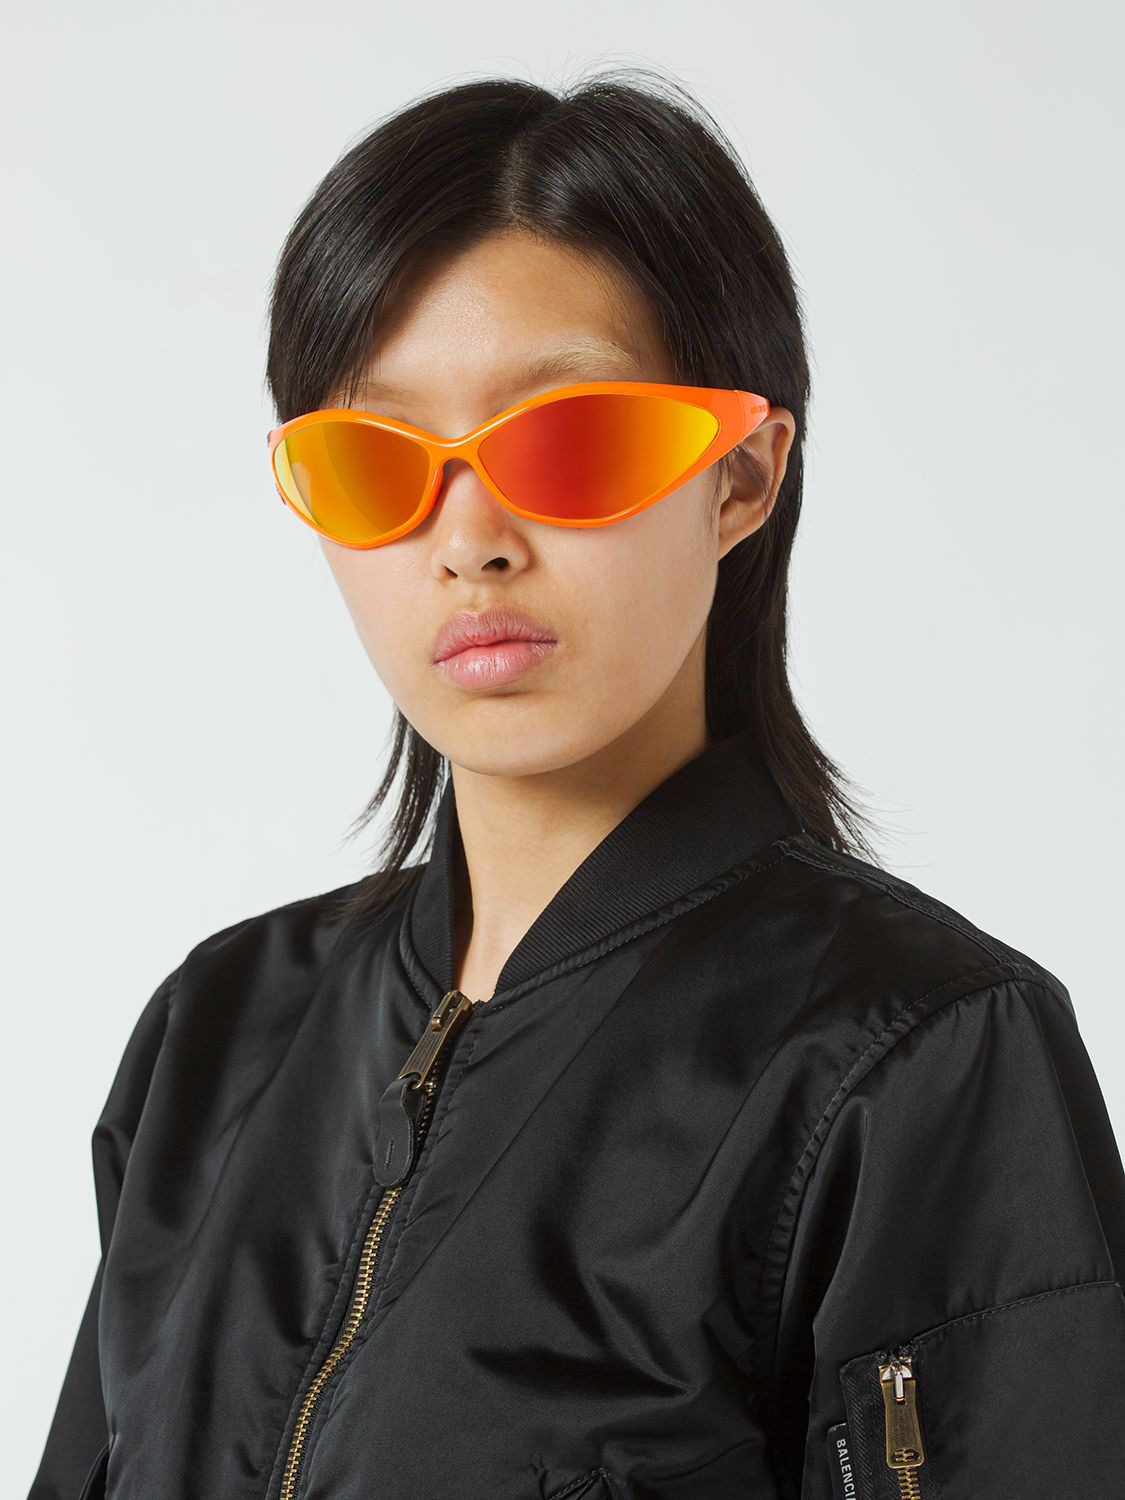 Shop Balenciaga 0285s 90s Oval Acetate Sunglasses In Fluo Orang